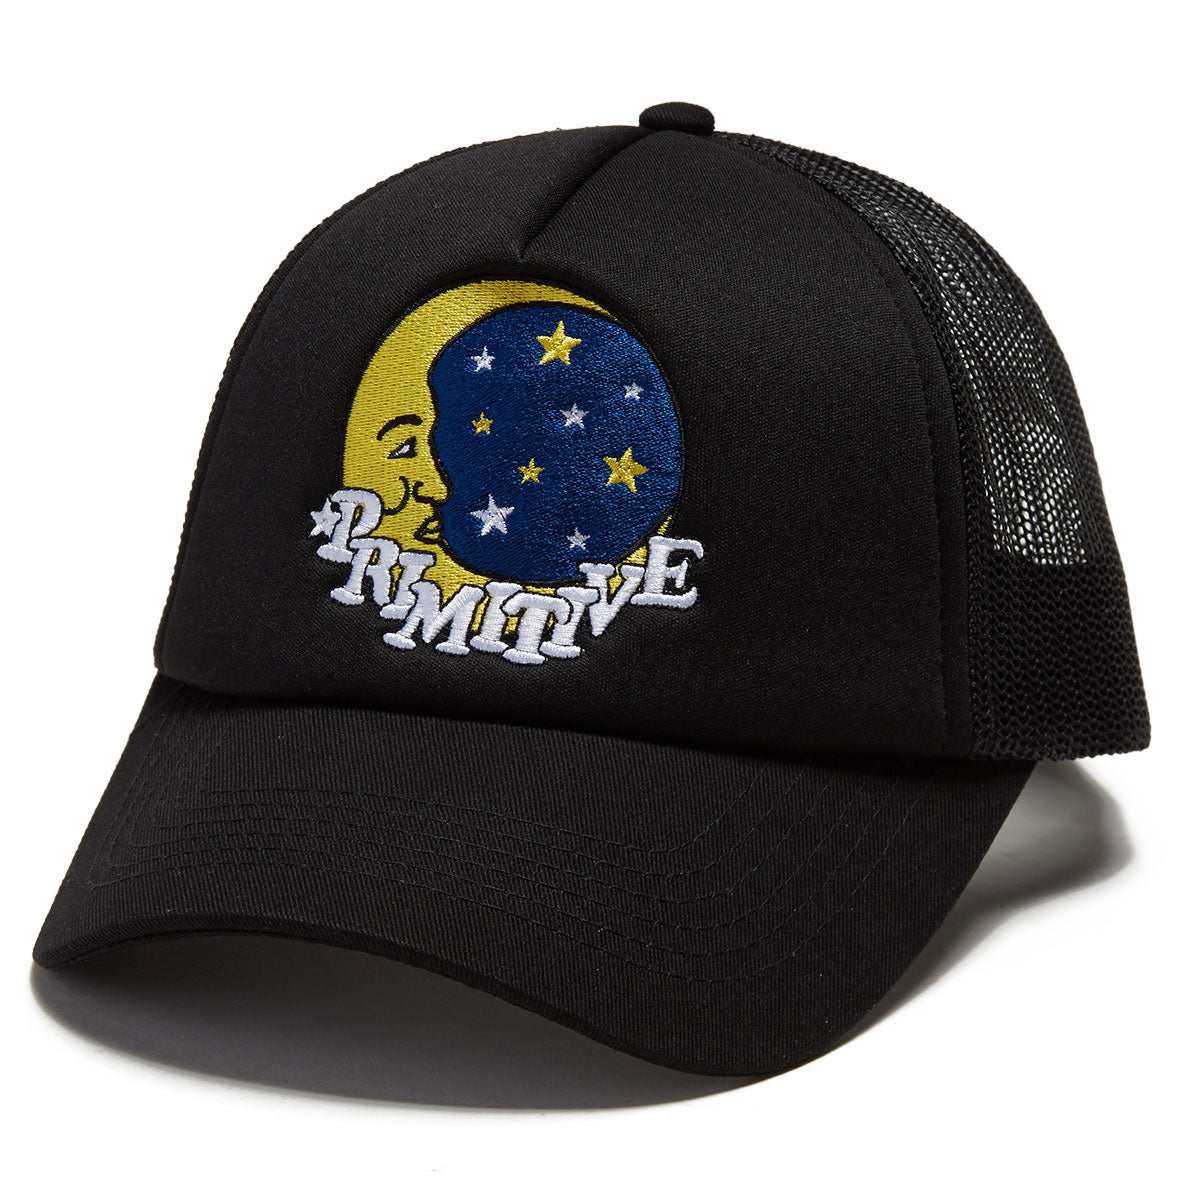 Primitive Luna Strapback Hat - Black image 1